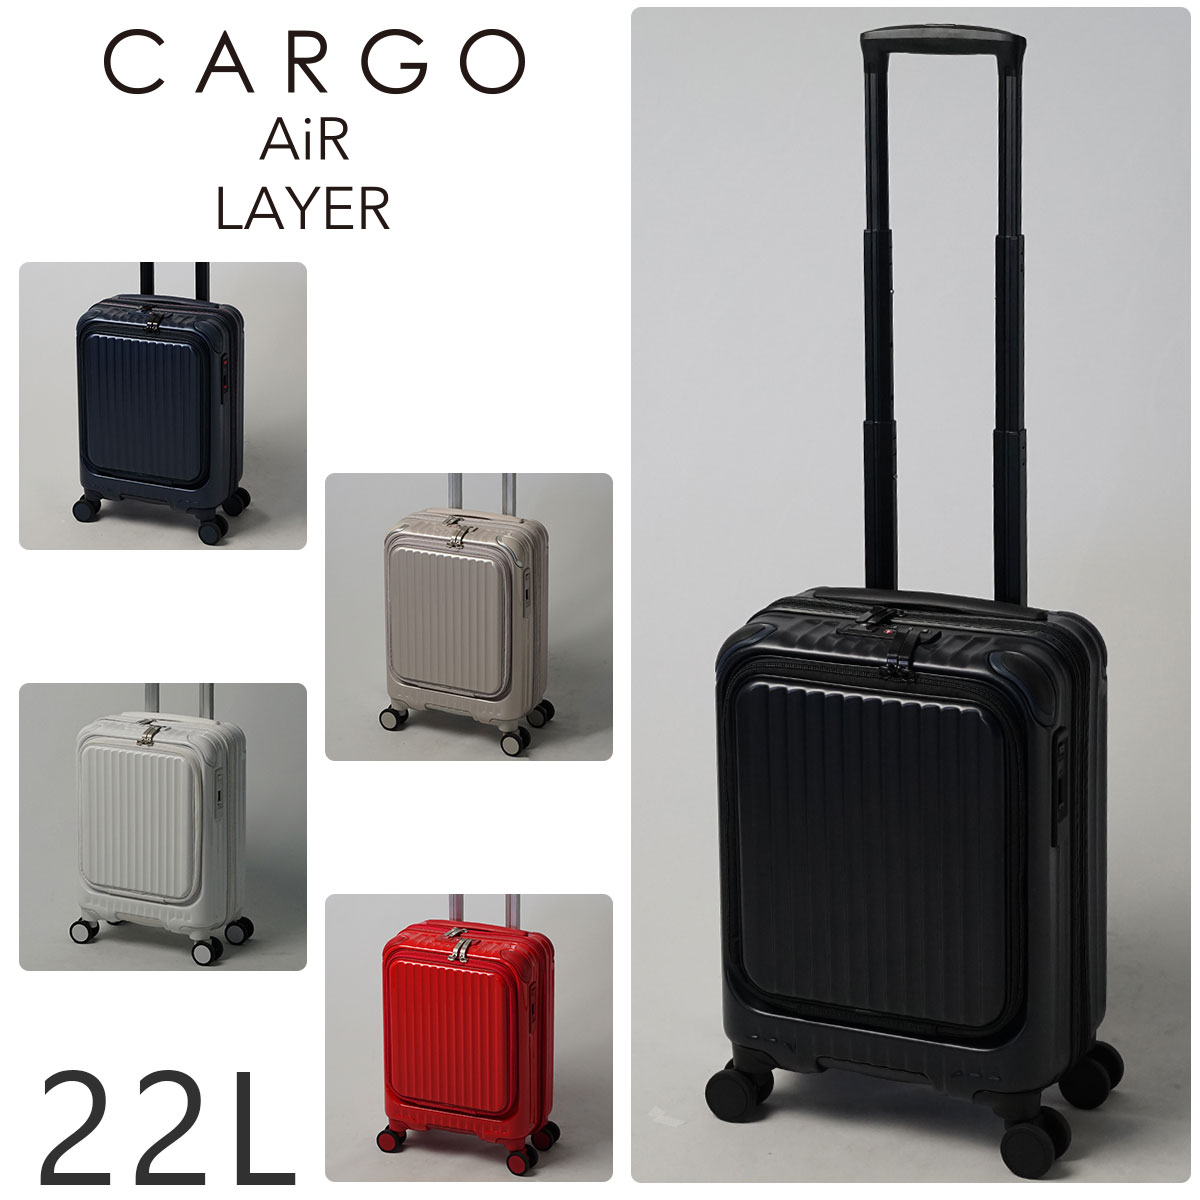 【メーカー直送】 カーゴ CARGO スーツケース ハード キャリー 旅行 機内持ち込み可能 22L 小型 1〜2泊程度 cat235ly メンズ レディース